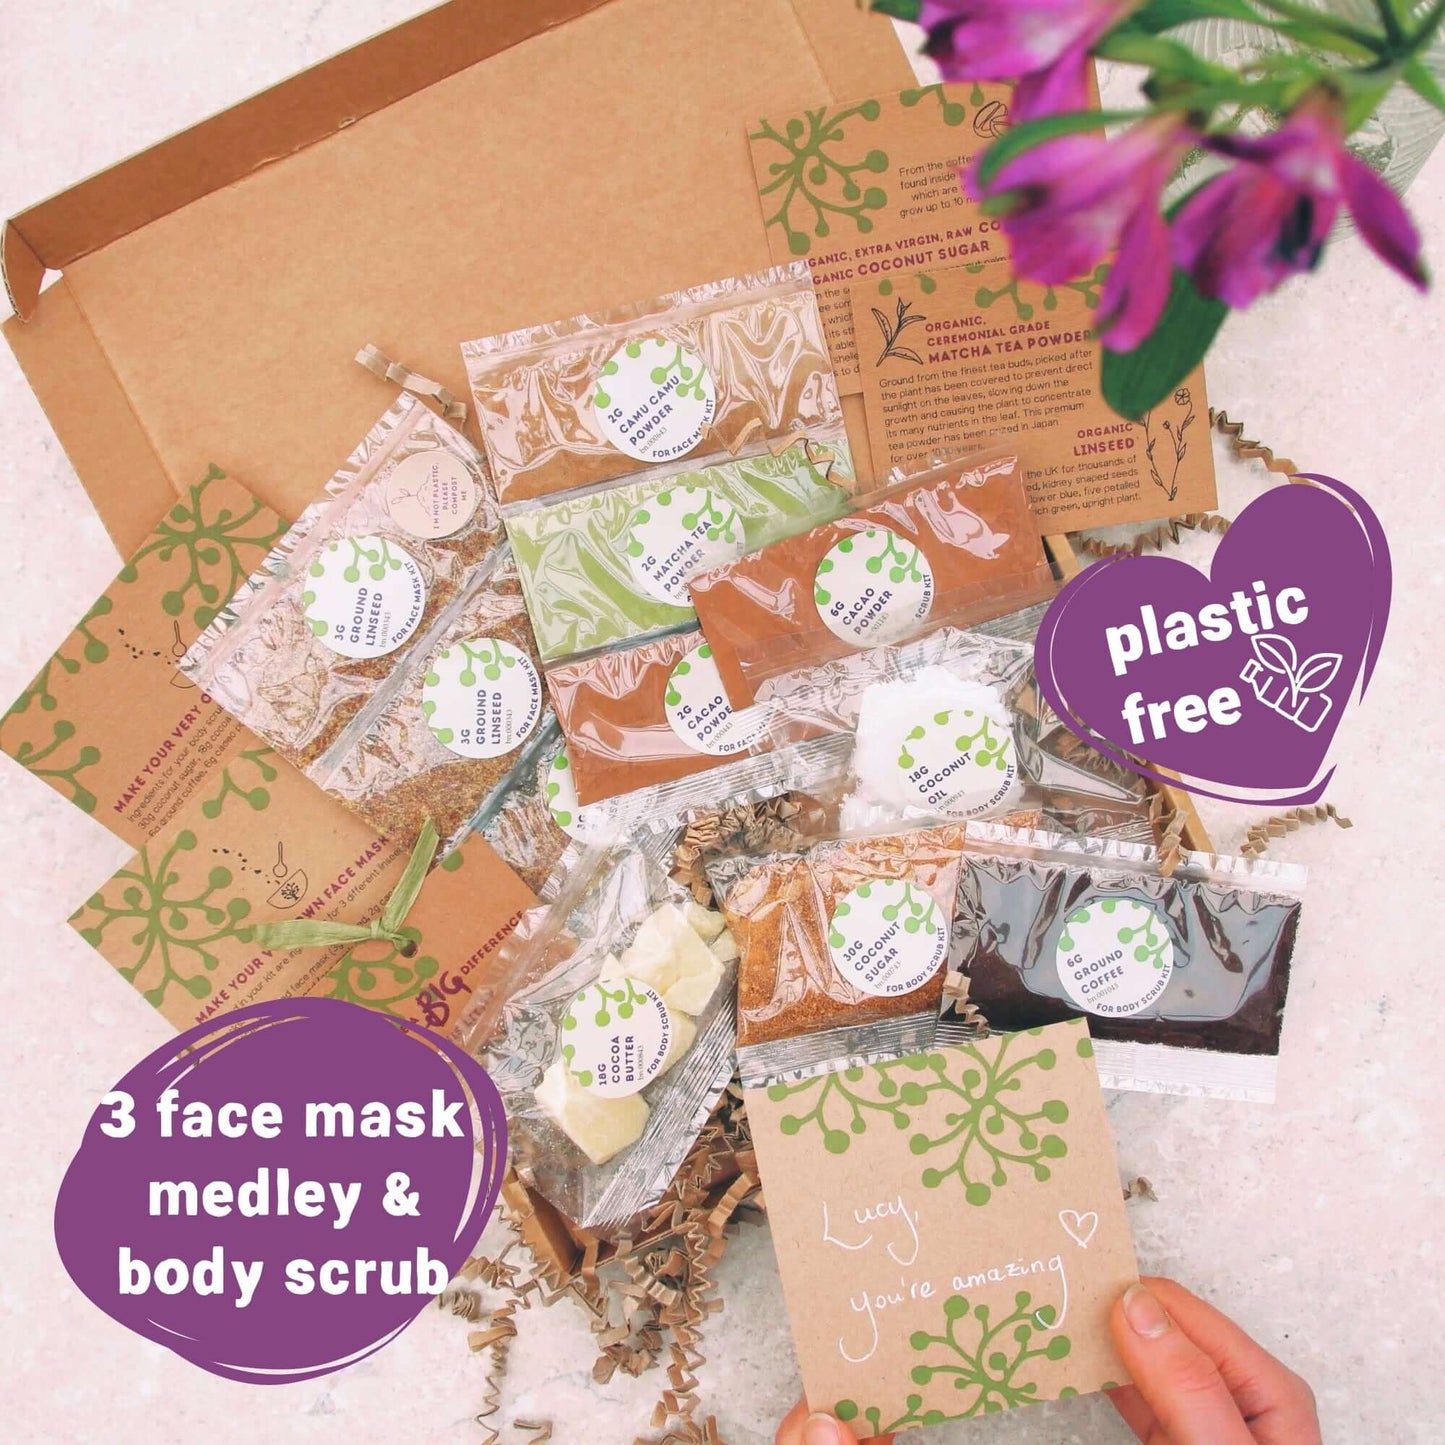 organic vegan skincare ingredients packaged in eco-friendly, plastic free packaging